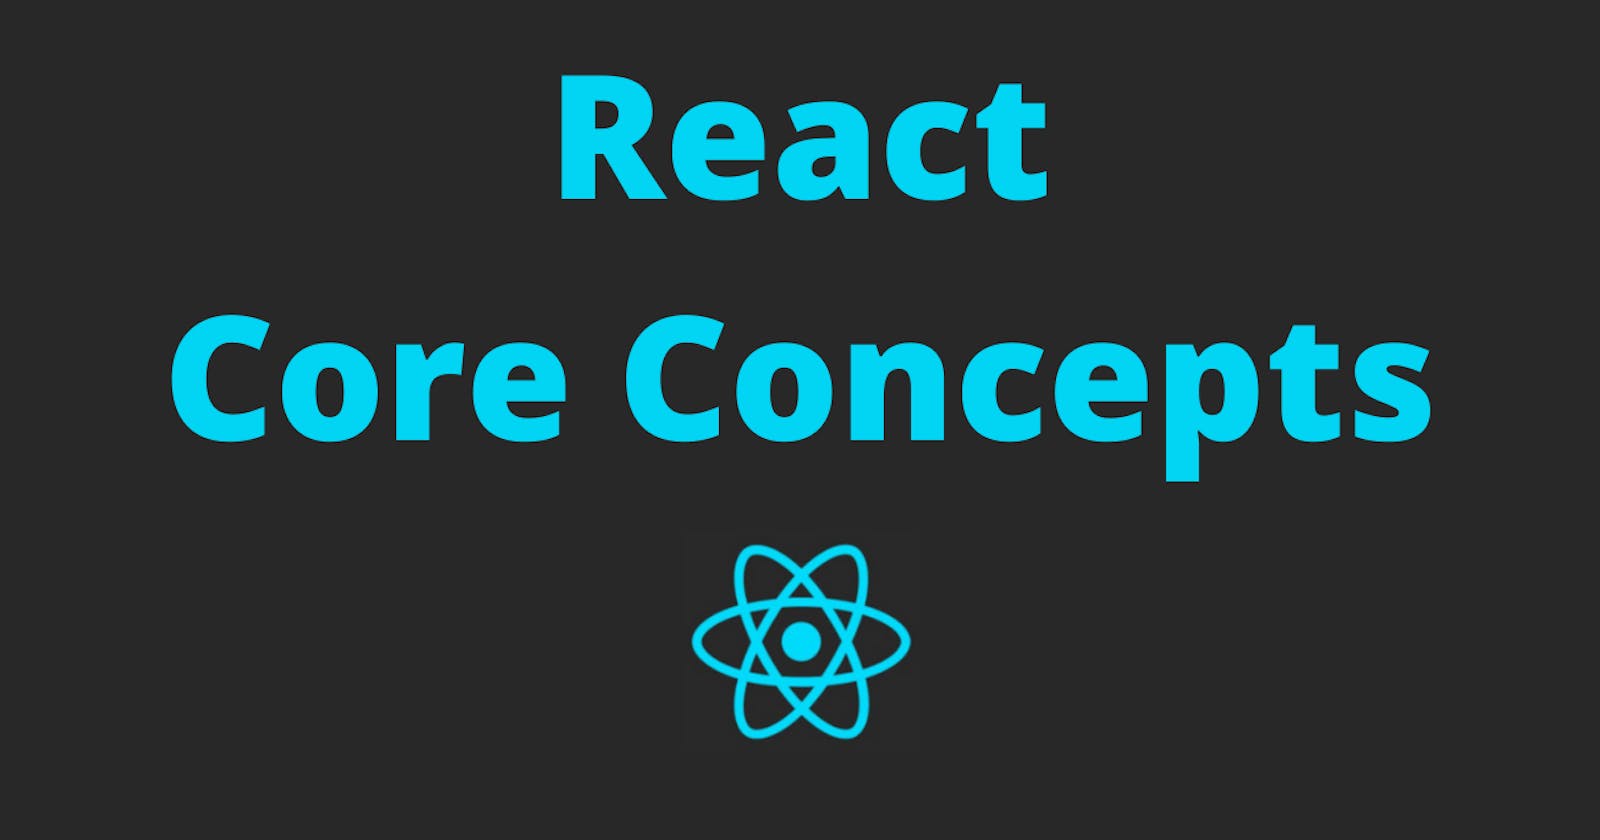 Reactjs Core concepts.